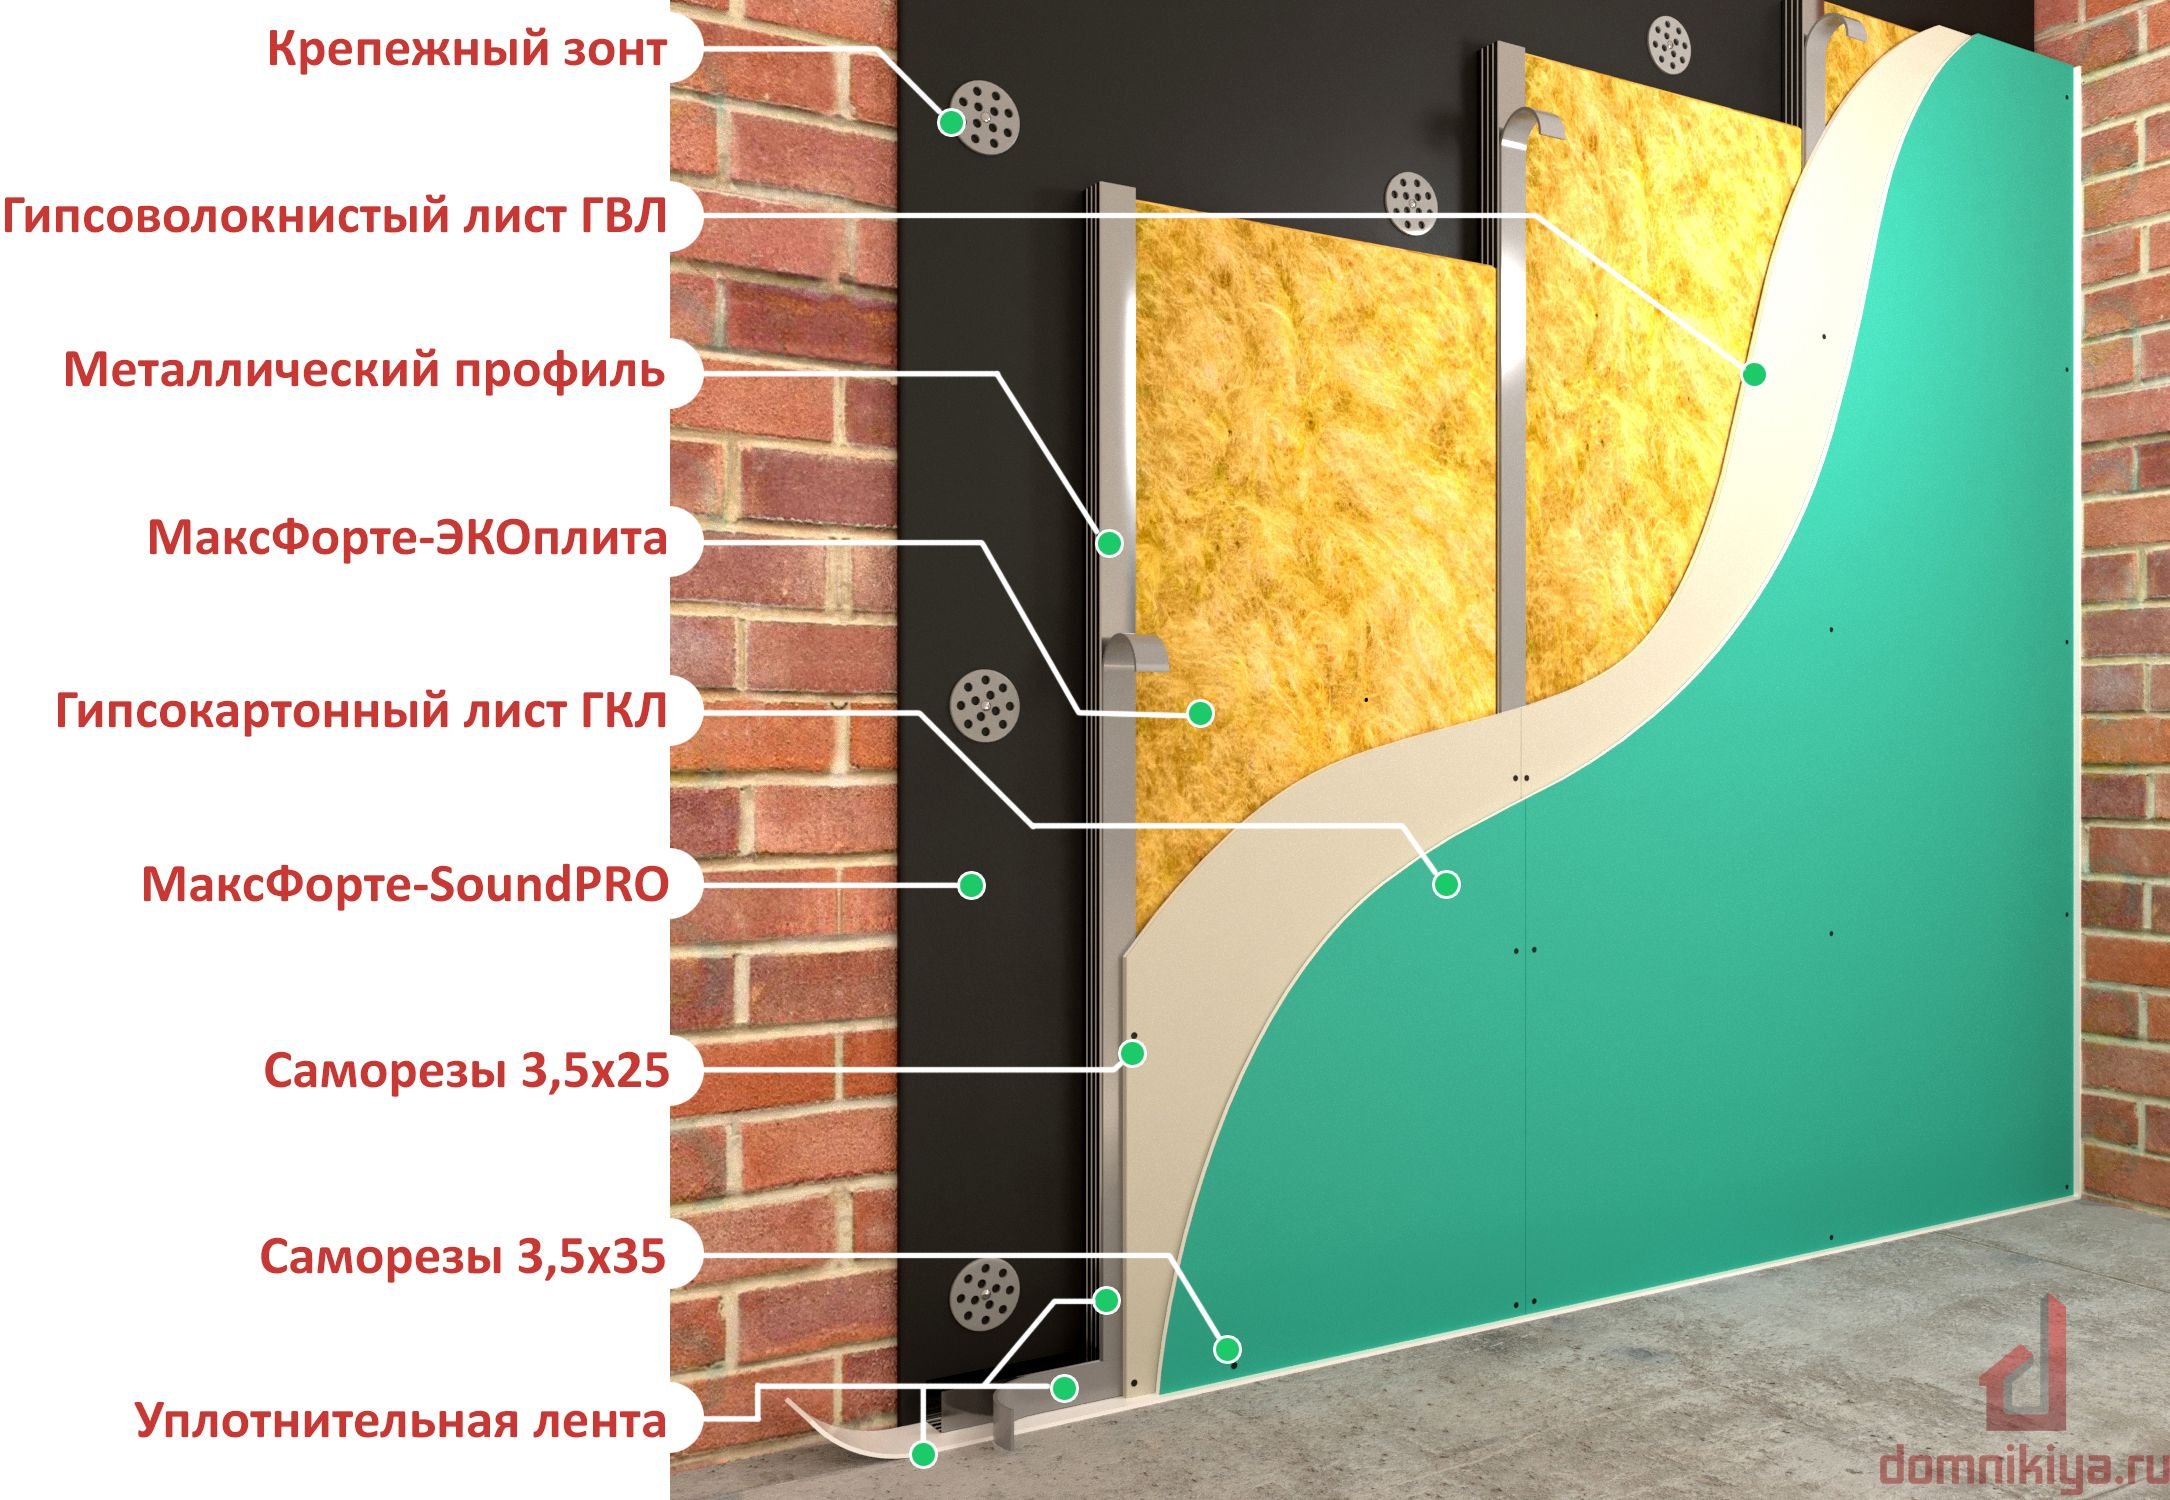 Звукоизоляция стен отзывы. Шумоизоляция стен. Звукоизоляция стен. Материалы для шумоизоляции стен. Звукоизоляция стен материалы.